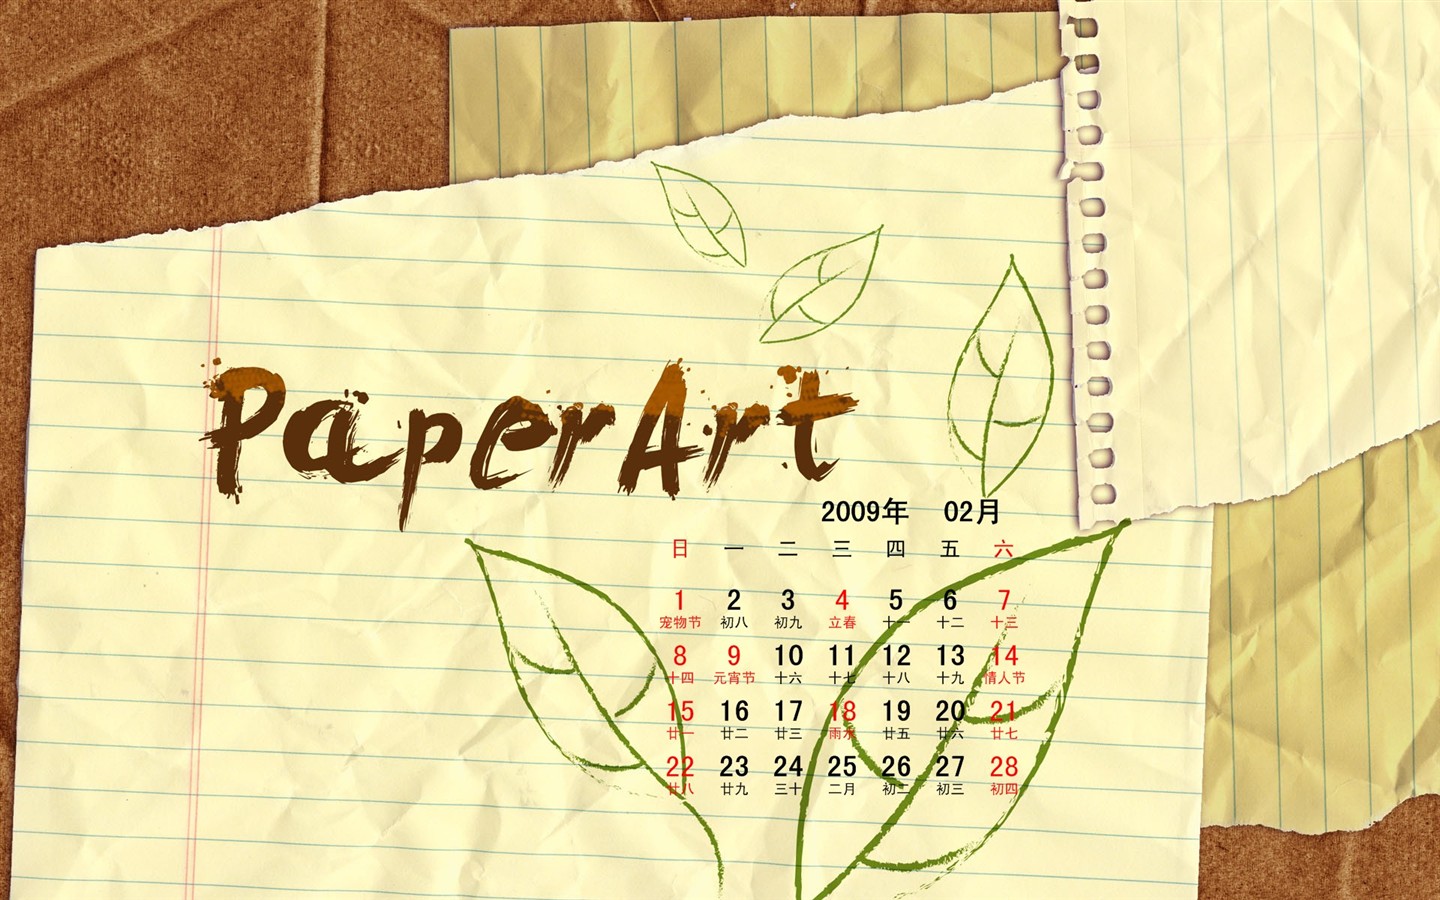 PaperArt 09 roků v kalendáři wallpaper února #27 - 1440x900